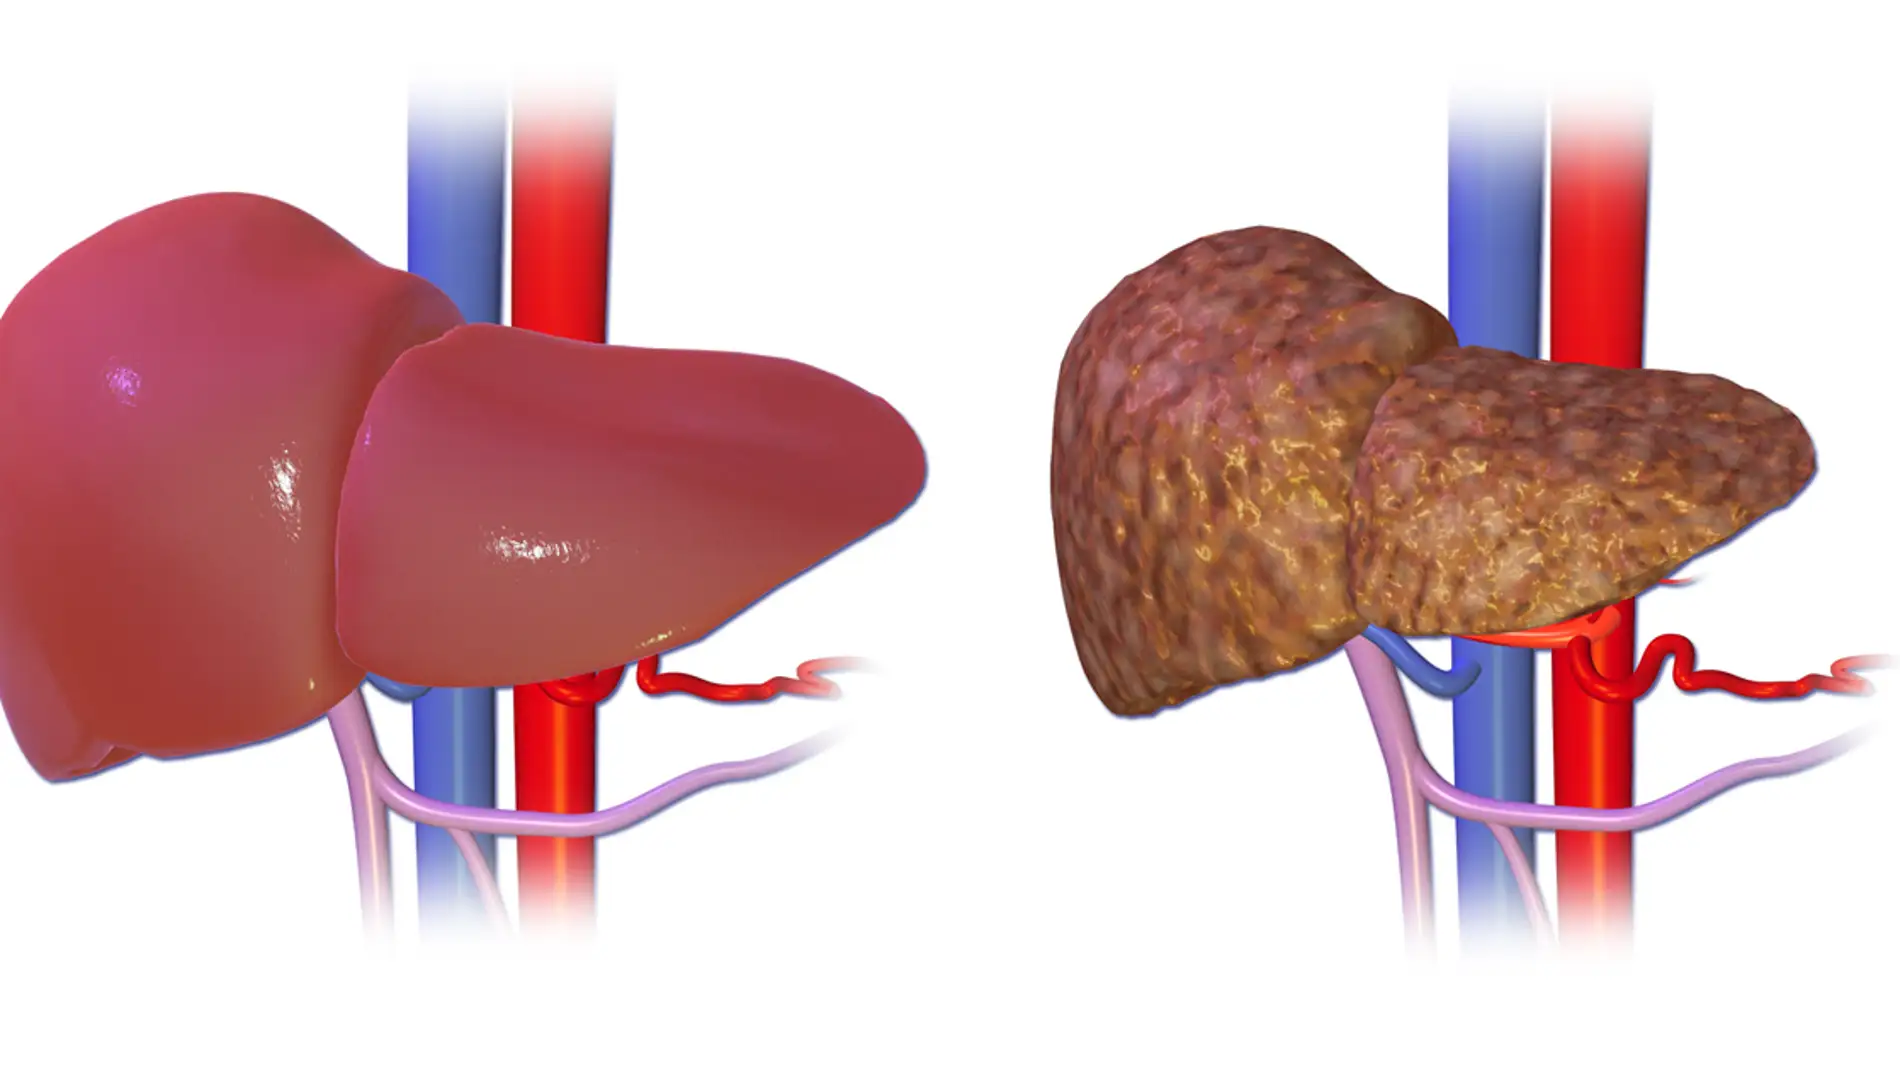 El hígado normal comparado con un hígado con cirrosis.